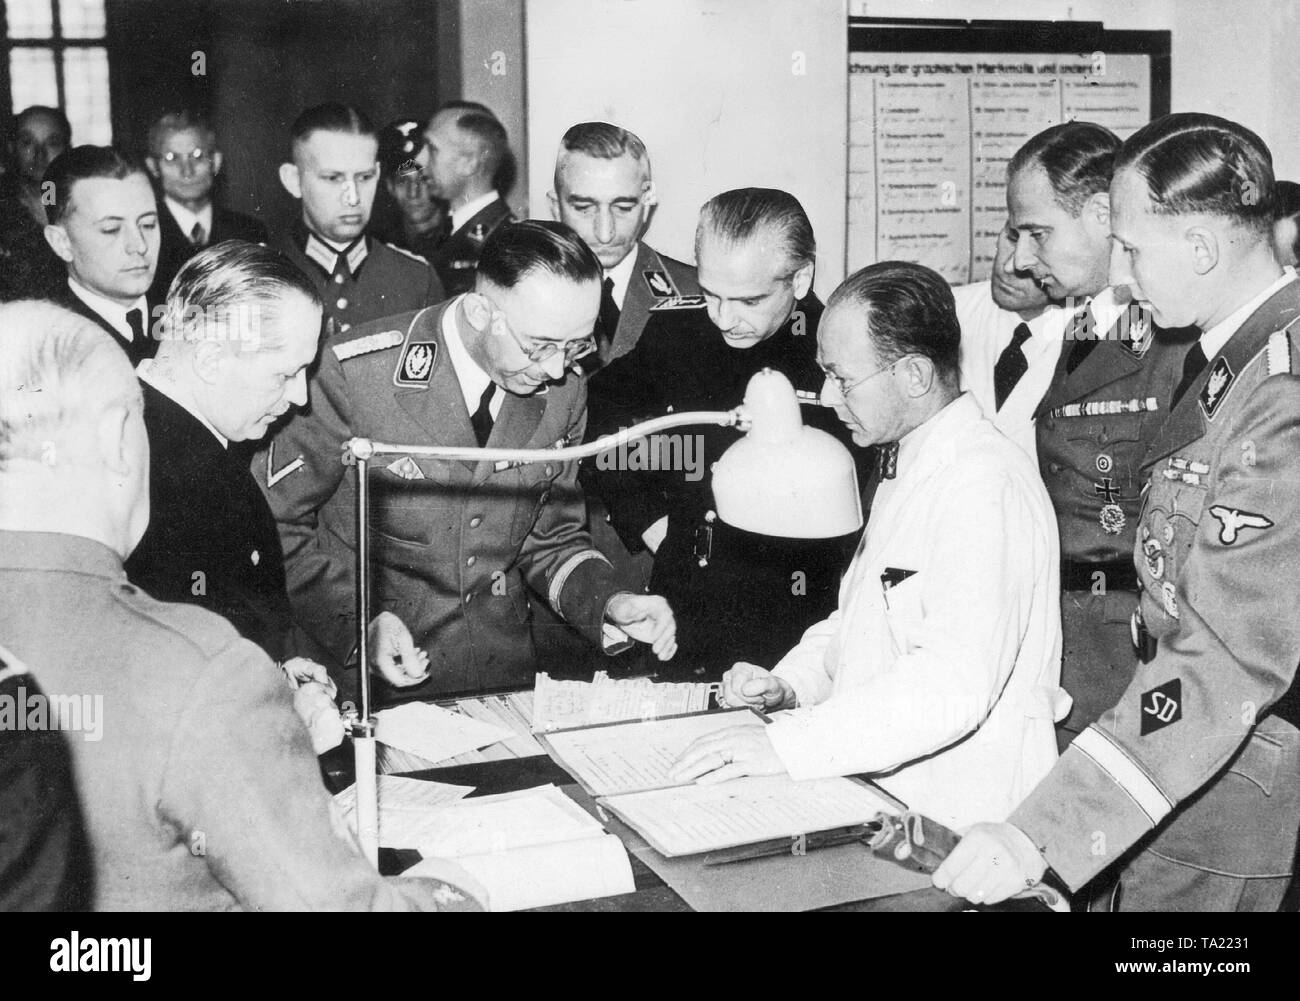 Reichsfuehrer-SS Heinrich Himmler (milieu) avec le ministre de l'Intérieur espagnol Serrano Suner, lors d'une visite à la collection de manuscrits de la Police criminelle de Reich. Ainsi également avant droit : Reinhard Heydrich, chef du Service de sécurité (SD), Karl Wolff, chef de l'état-major personnel du Reichsfuehrer, à côté d'Himmler sur la droite, le ministre de l'Intérieur espagnol, a laissé derrière lui, Reich Directeur criminel Nebe. Banque D'Images